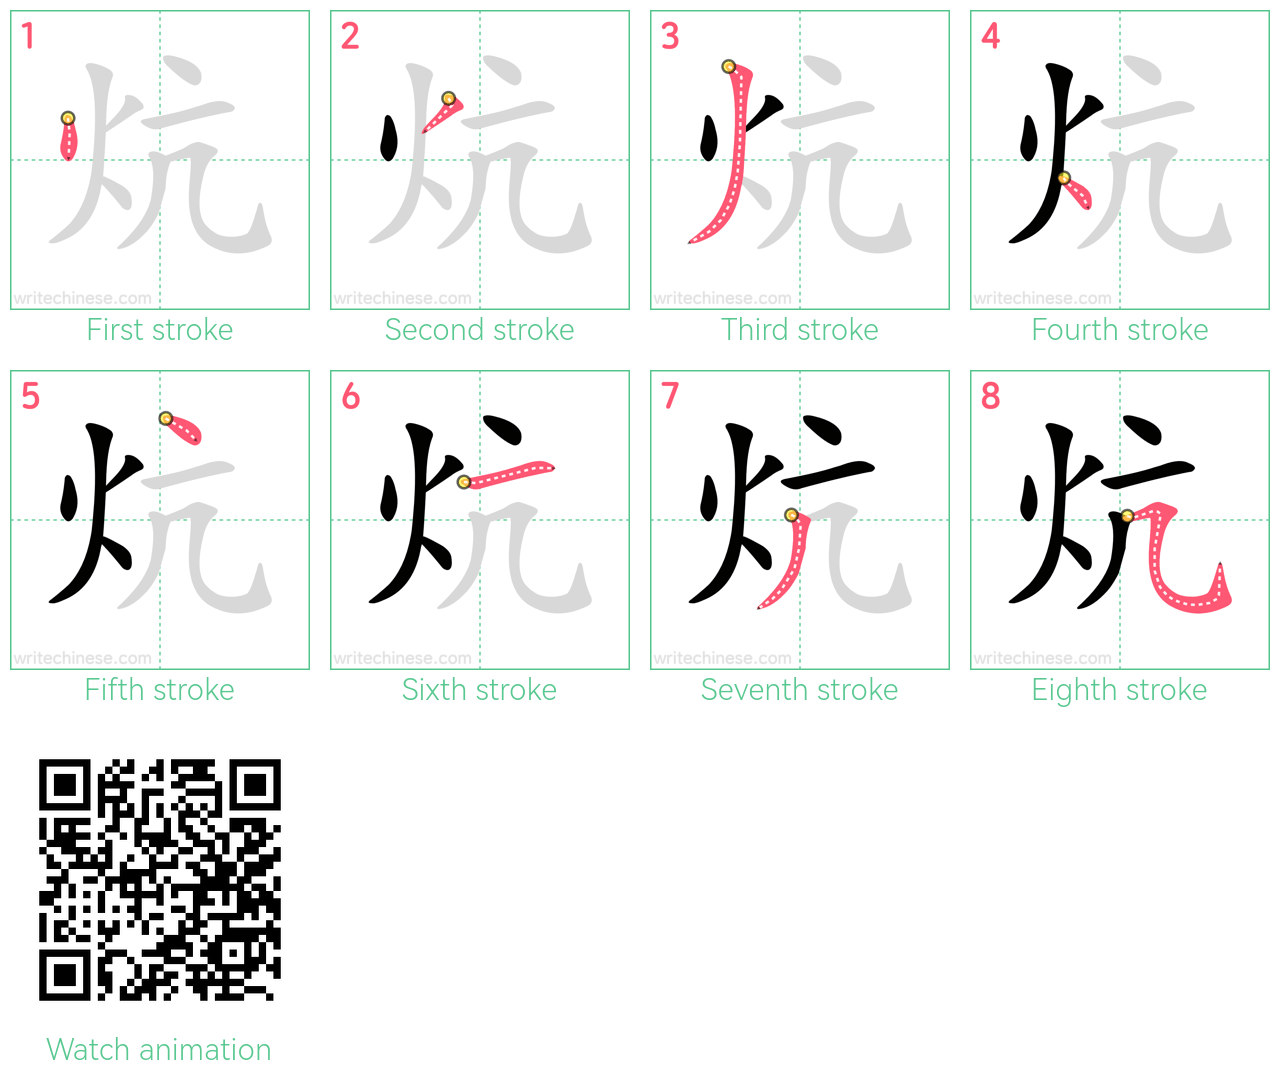 炕 step-by-step stroke order diagrams